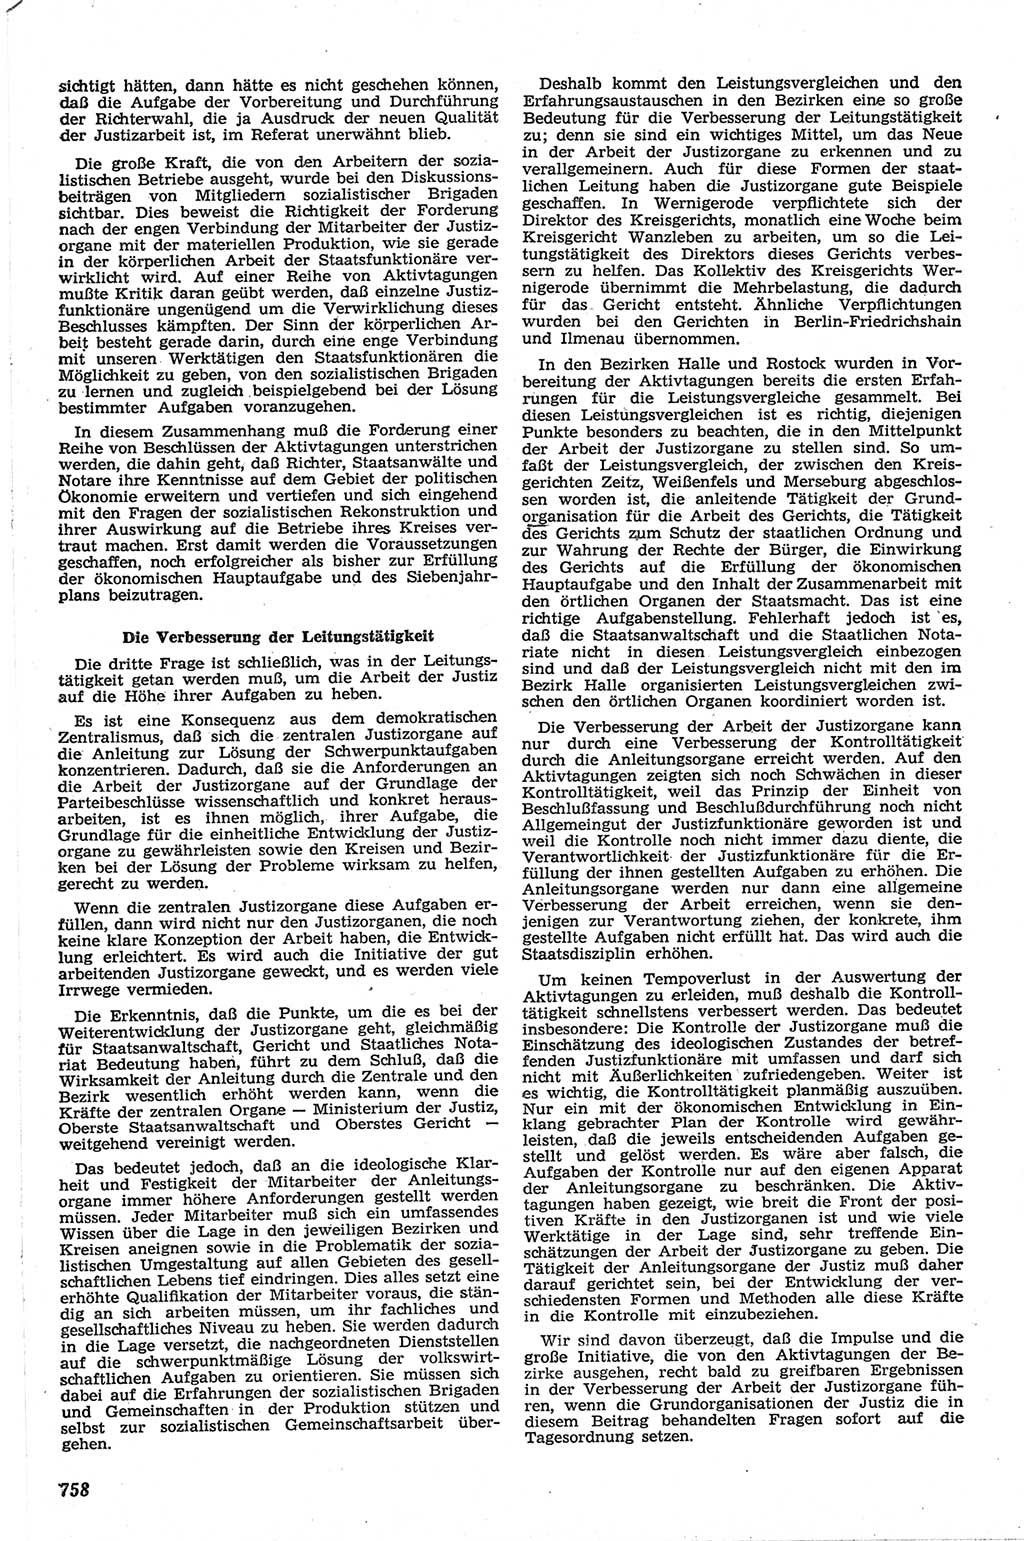 Neue Justiz (NJ), Zeitschrift für Recht und Rechtswissenschaft [Deutsche Demokratische Republik (DDR)], 13. Jahrgang 1959, Seite 758 (NJ DDR 1959, S. 758)